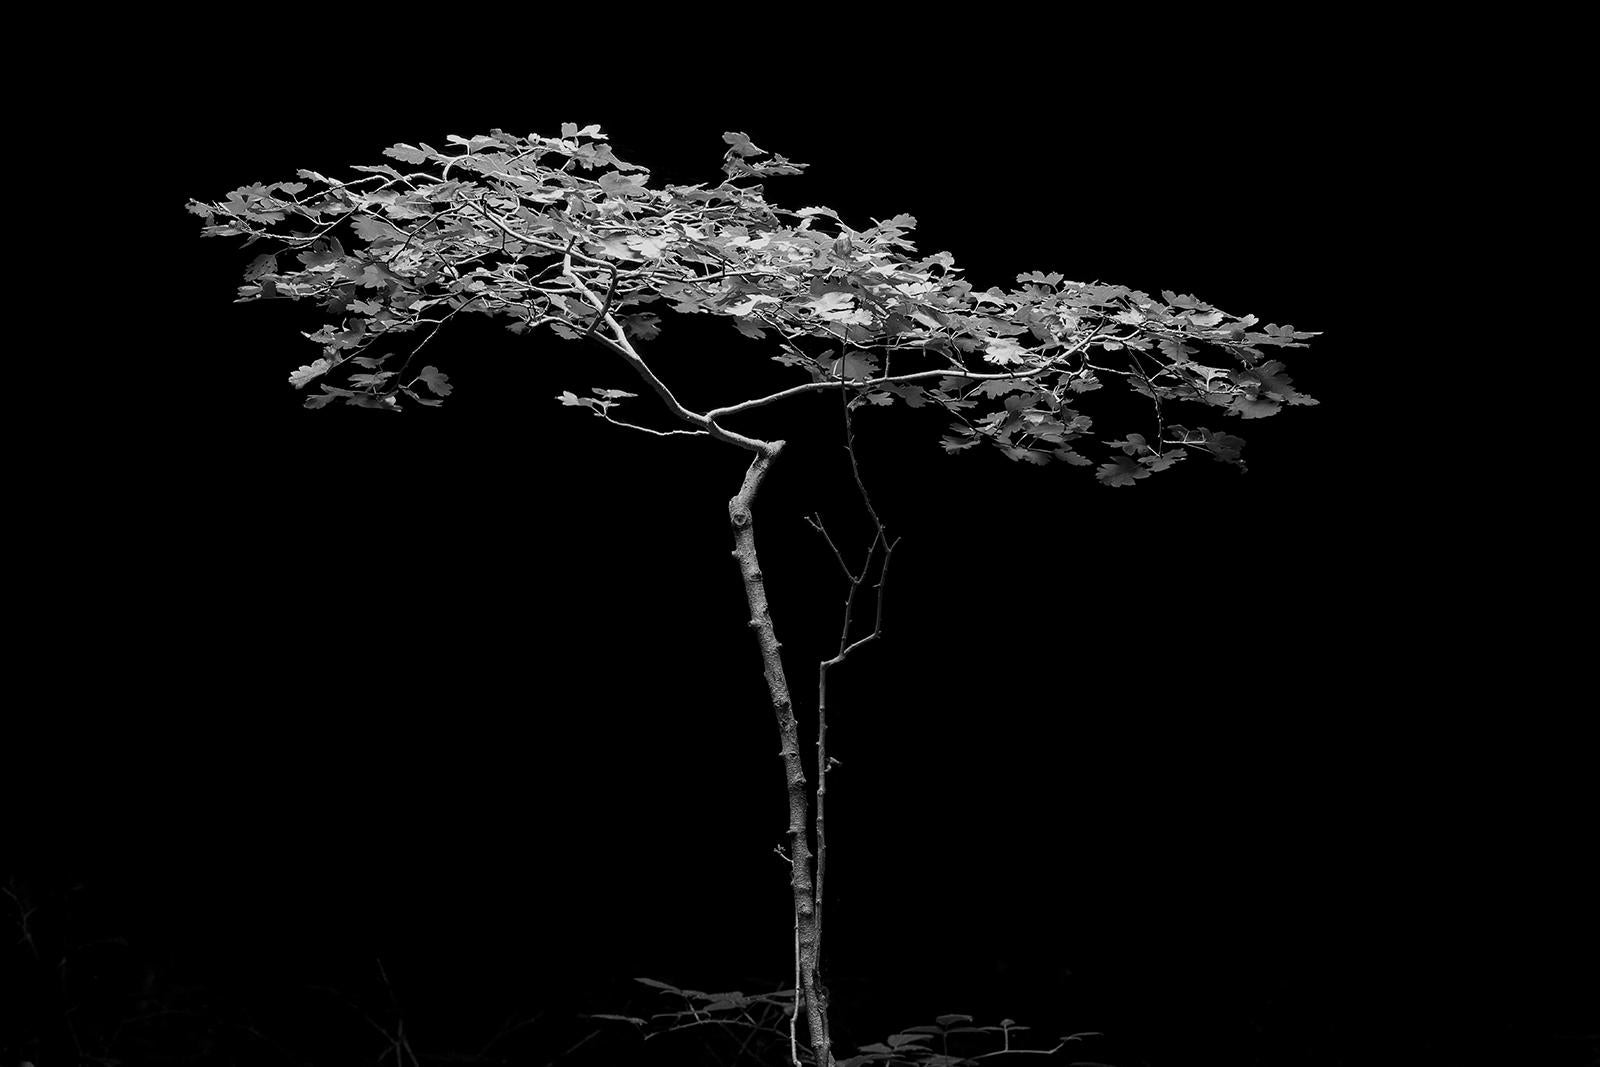 Ian Sanderson Black and White Photograph – Baum – signierter Kunstdruck in limitierter Auflage, Schwarz-Weiß- Naturfoto, zeitgenössisch